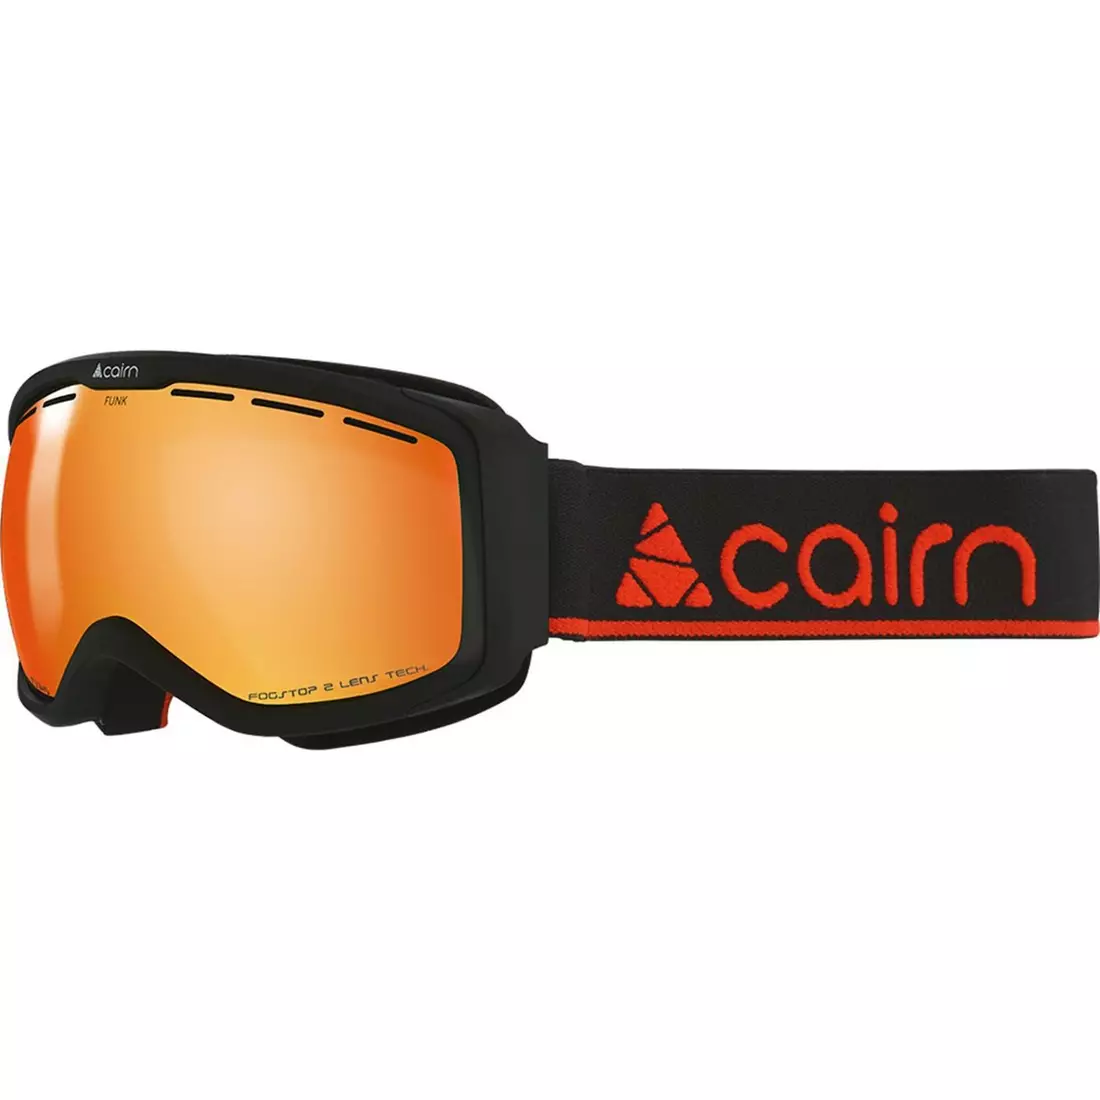 CAIRN junior ski/snowboard goggles FUNK OTG SPX3000 IUM Mat Black Orange 